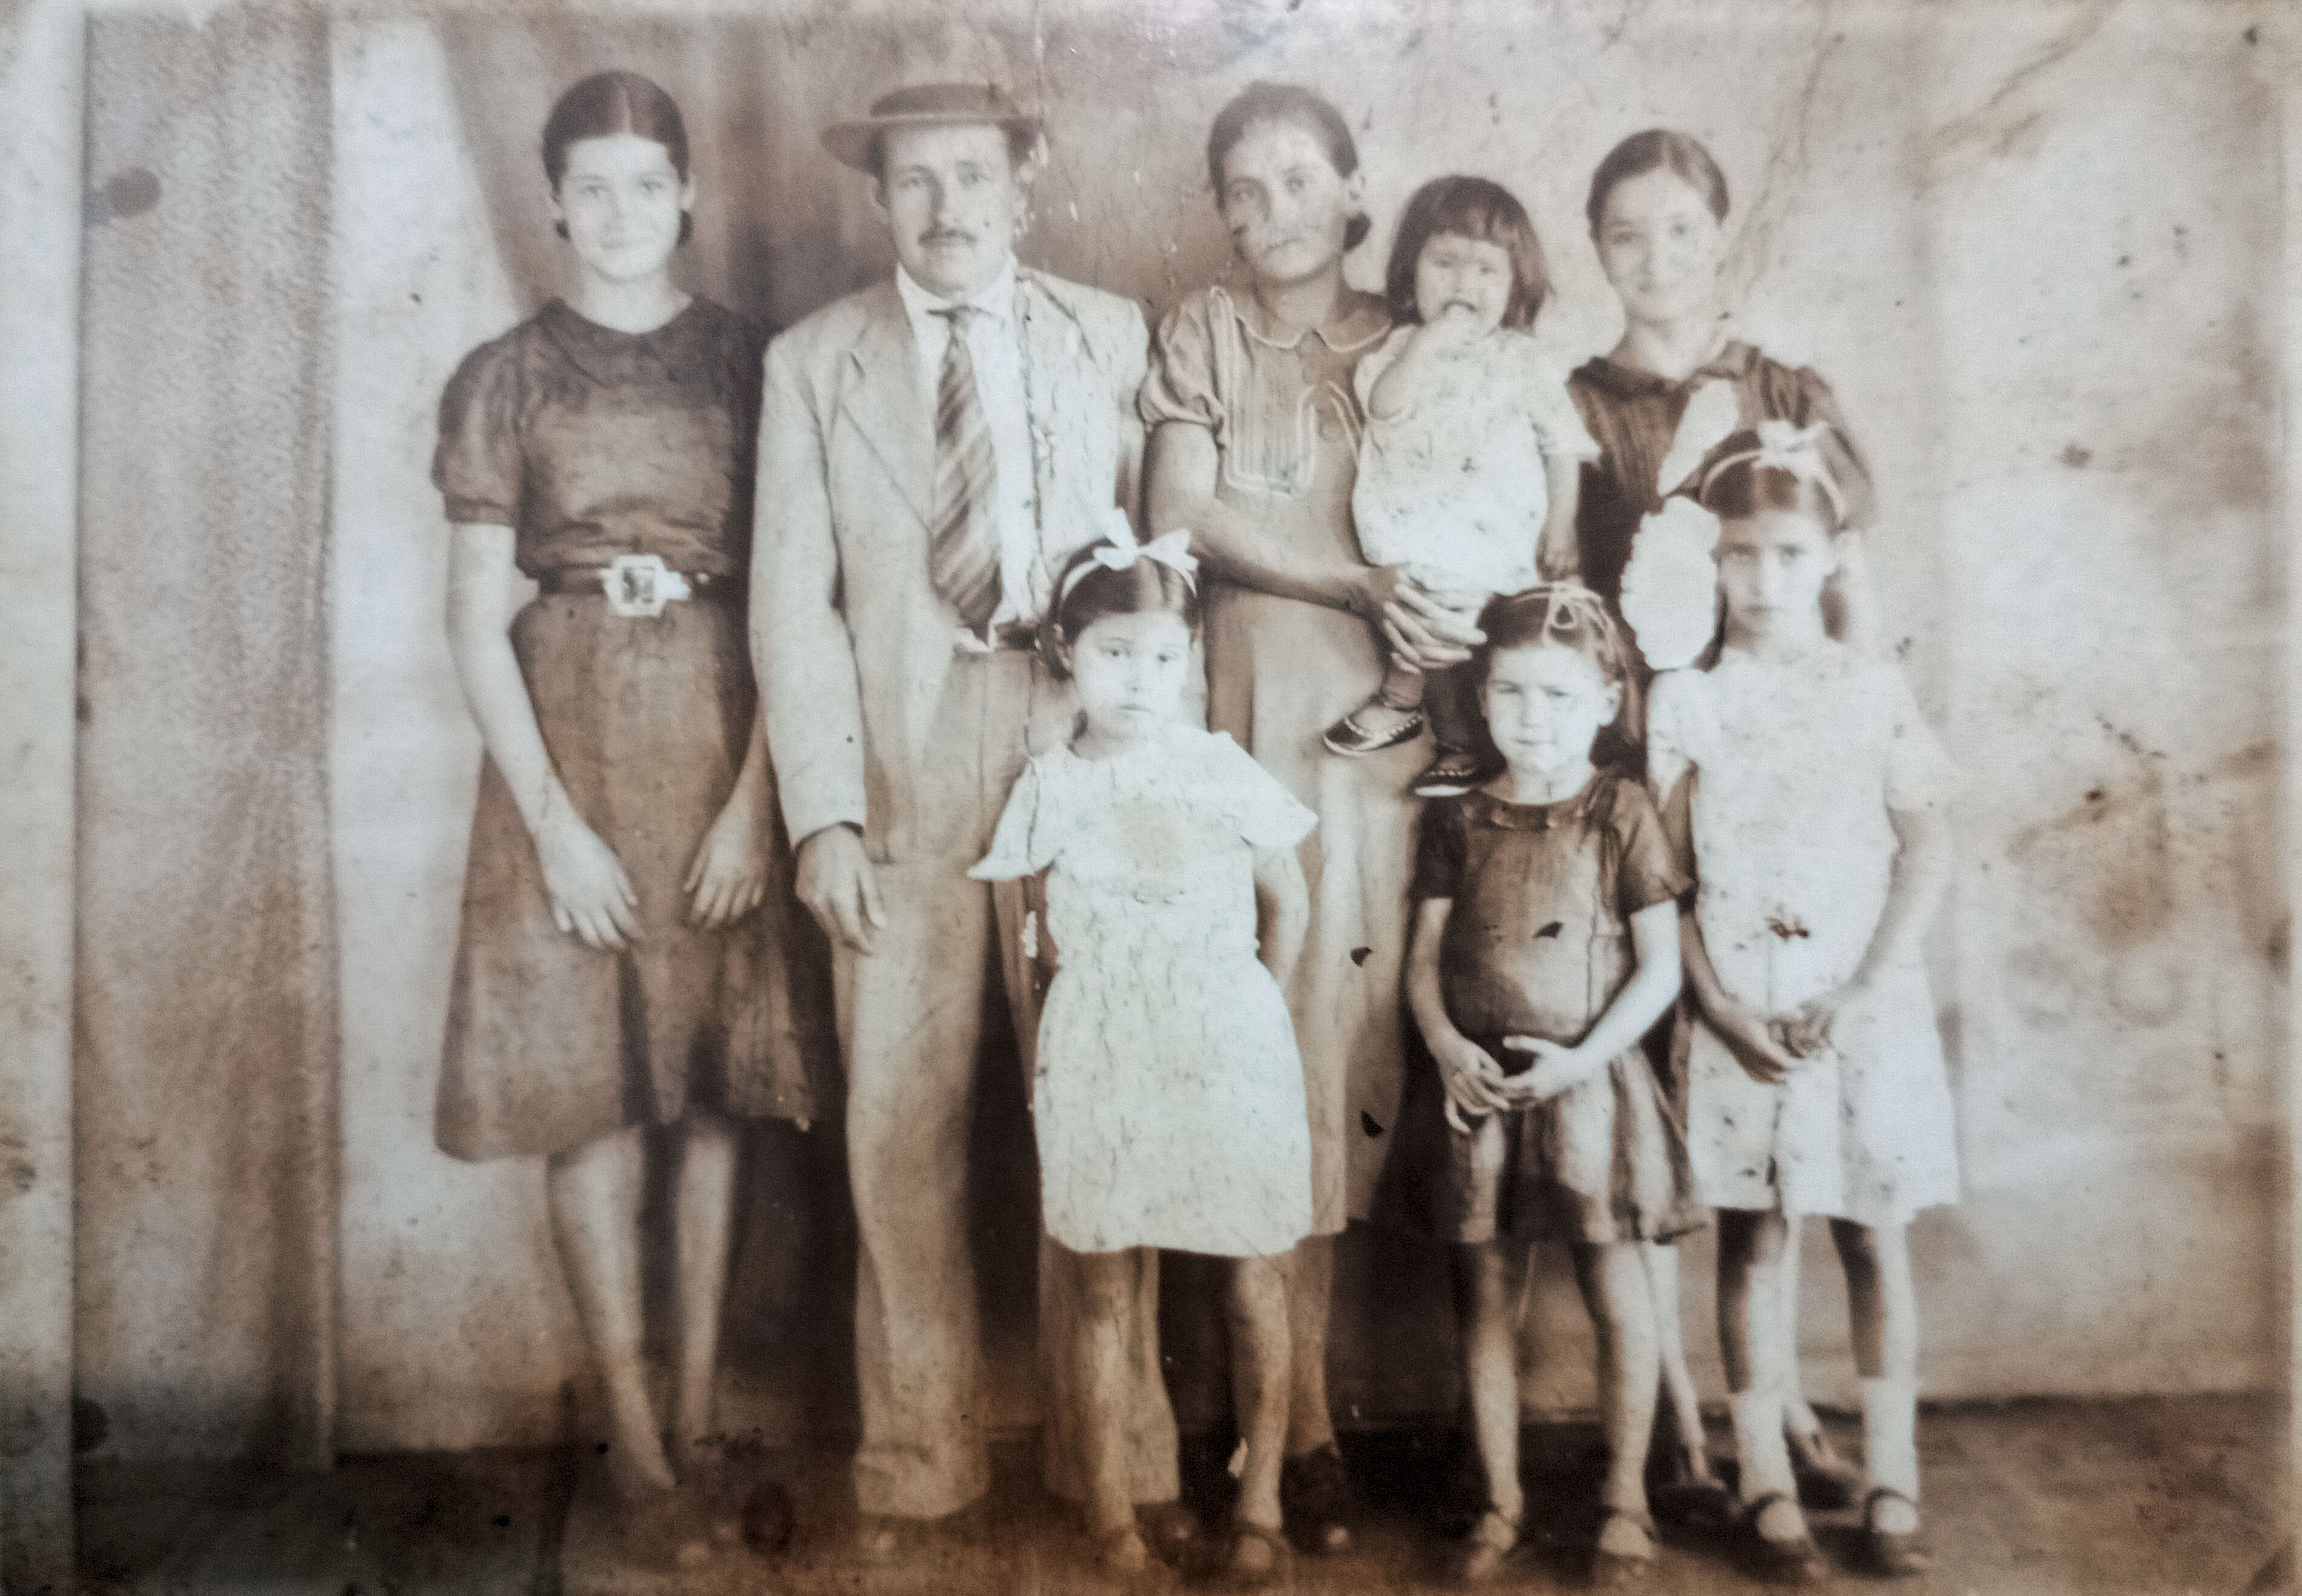 Origem de todos nós.
foto datada de 1938 durante viagem a Aparecida do Norte.
No centro da foto estão Vô Guilherme, Vó Amilde. No colo da Vó é a Tia Lázara.